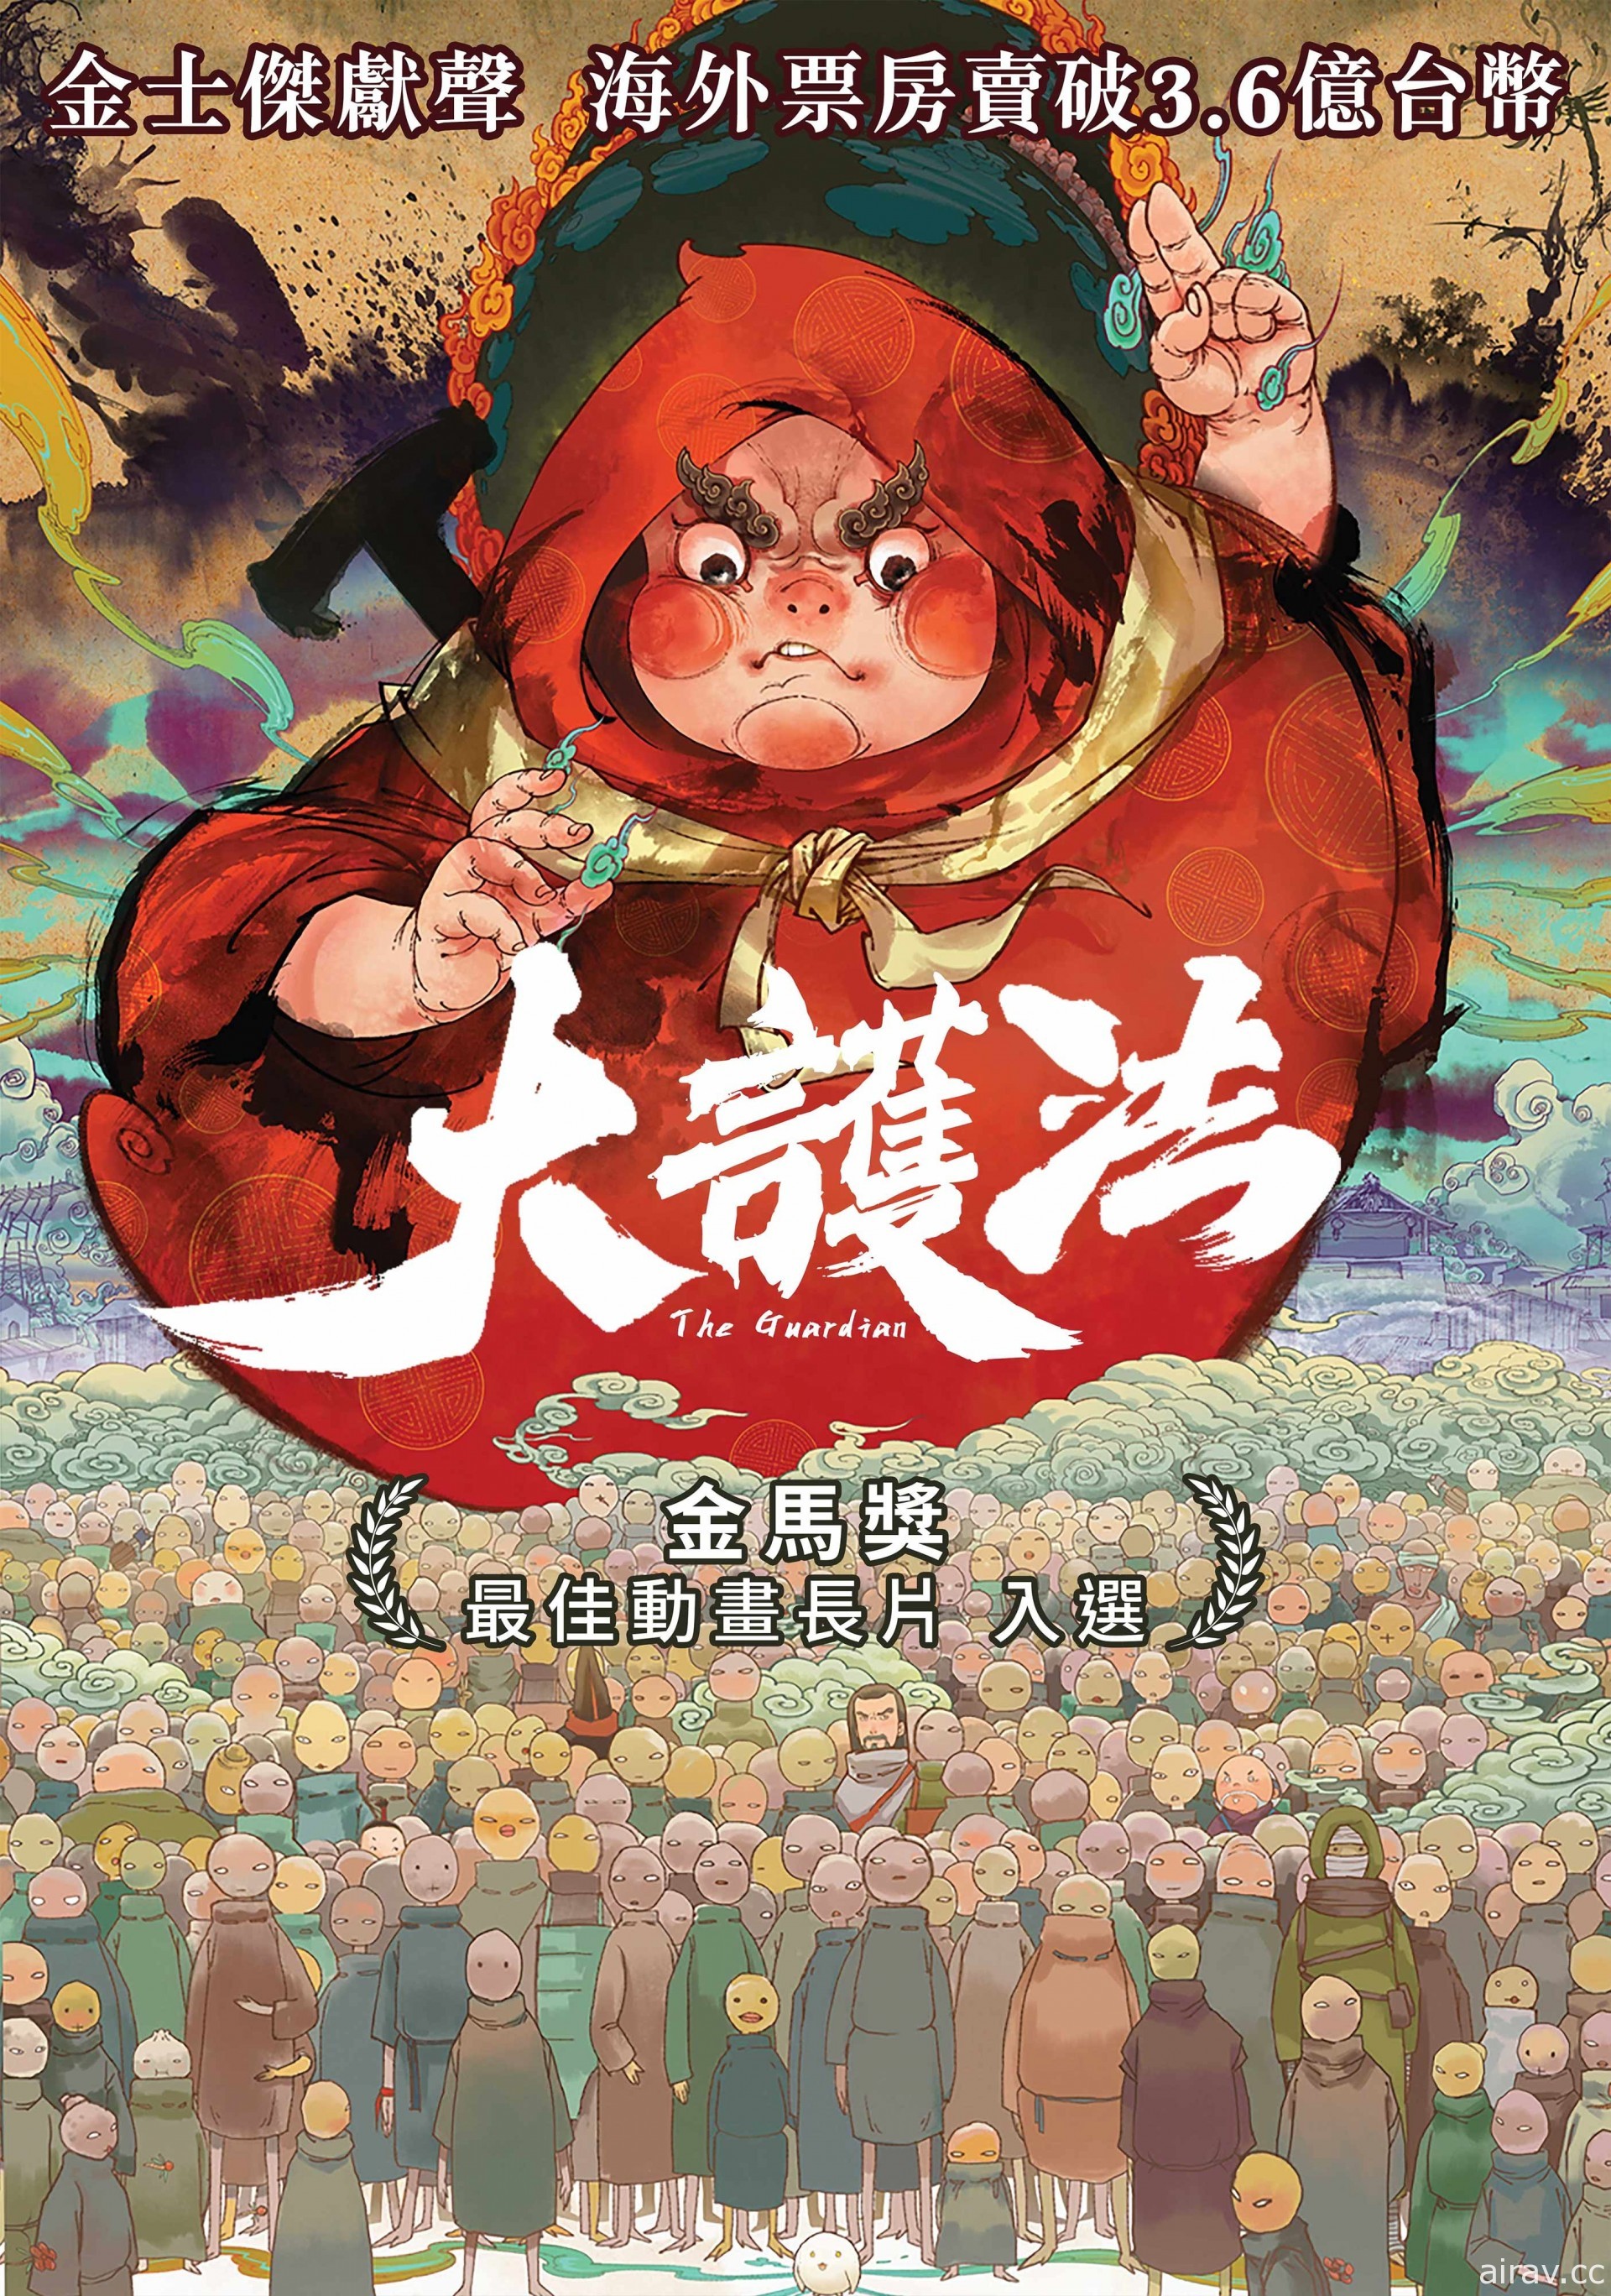 中國動畫《大護法》將在 12 月 1 日於車庫娛樂線上平台 GP+ 舉辦台灣線上首映